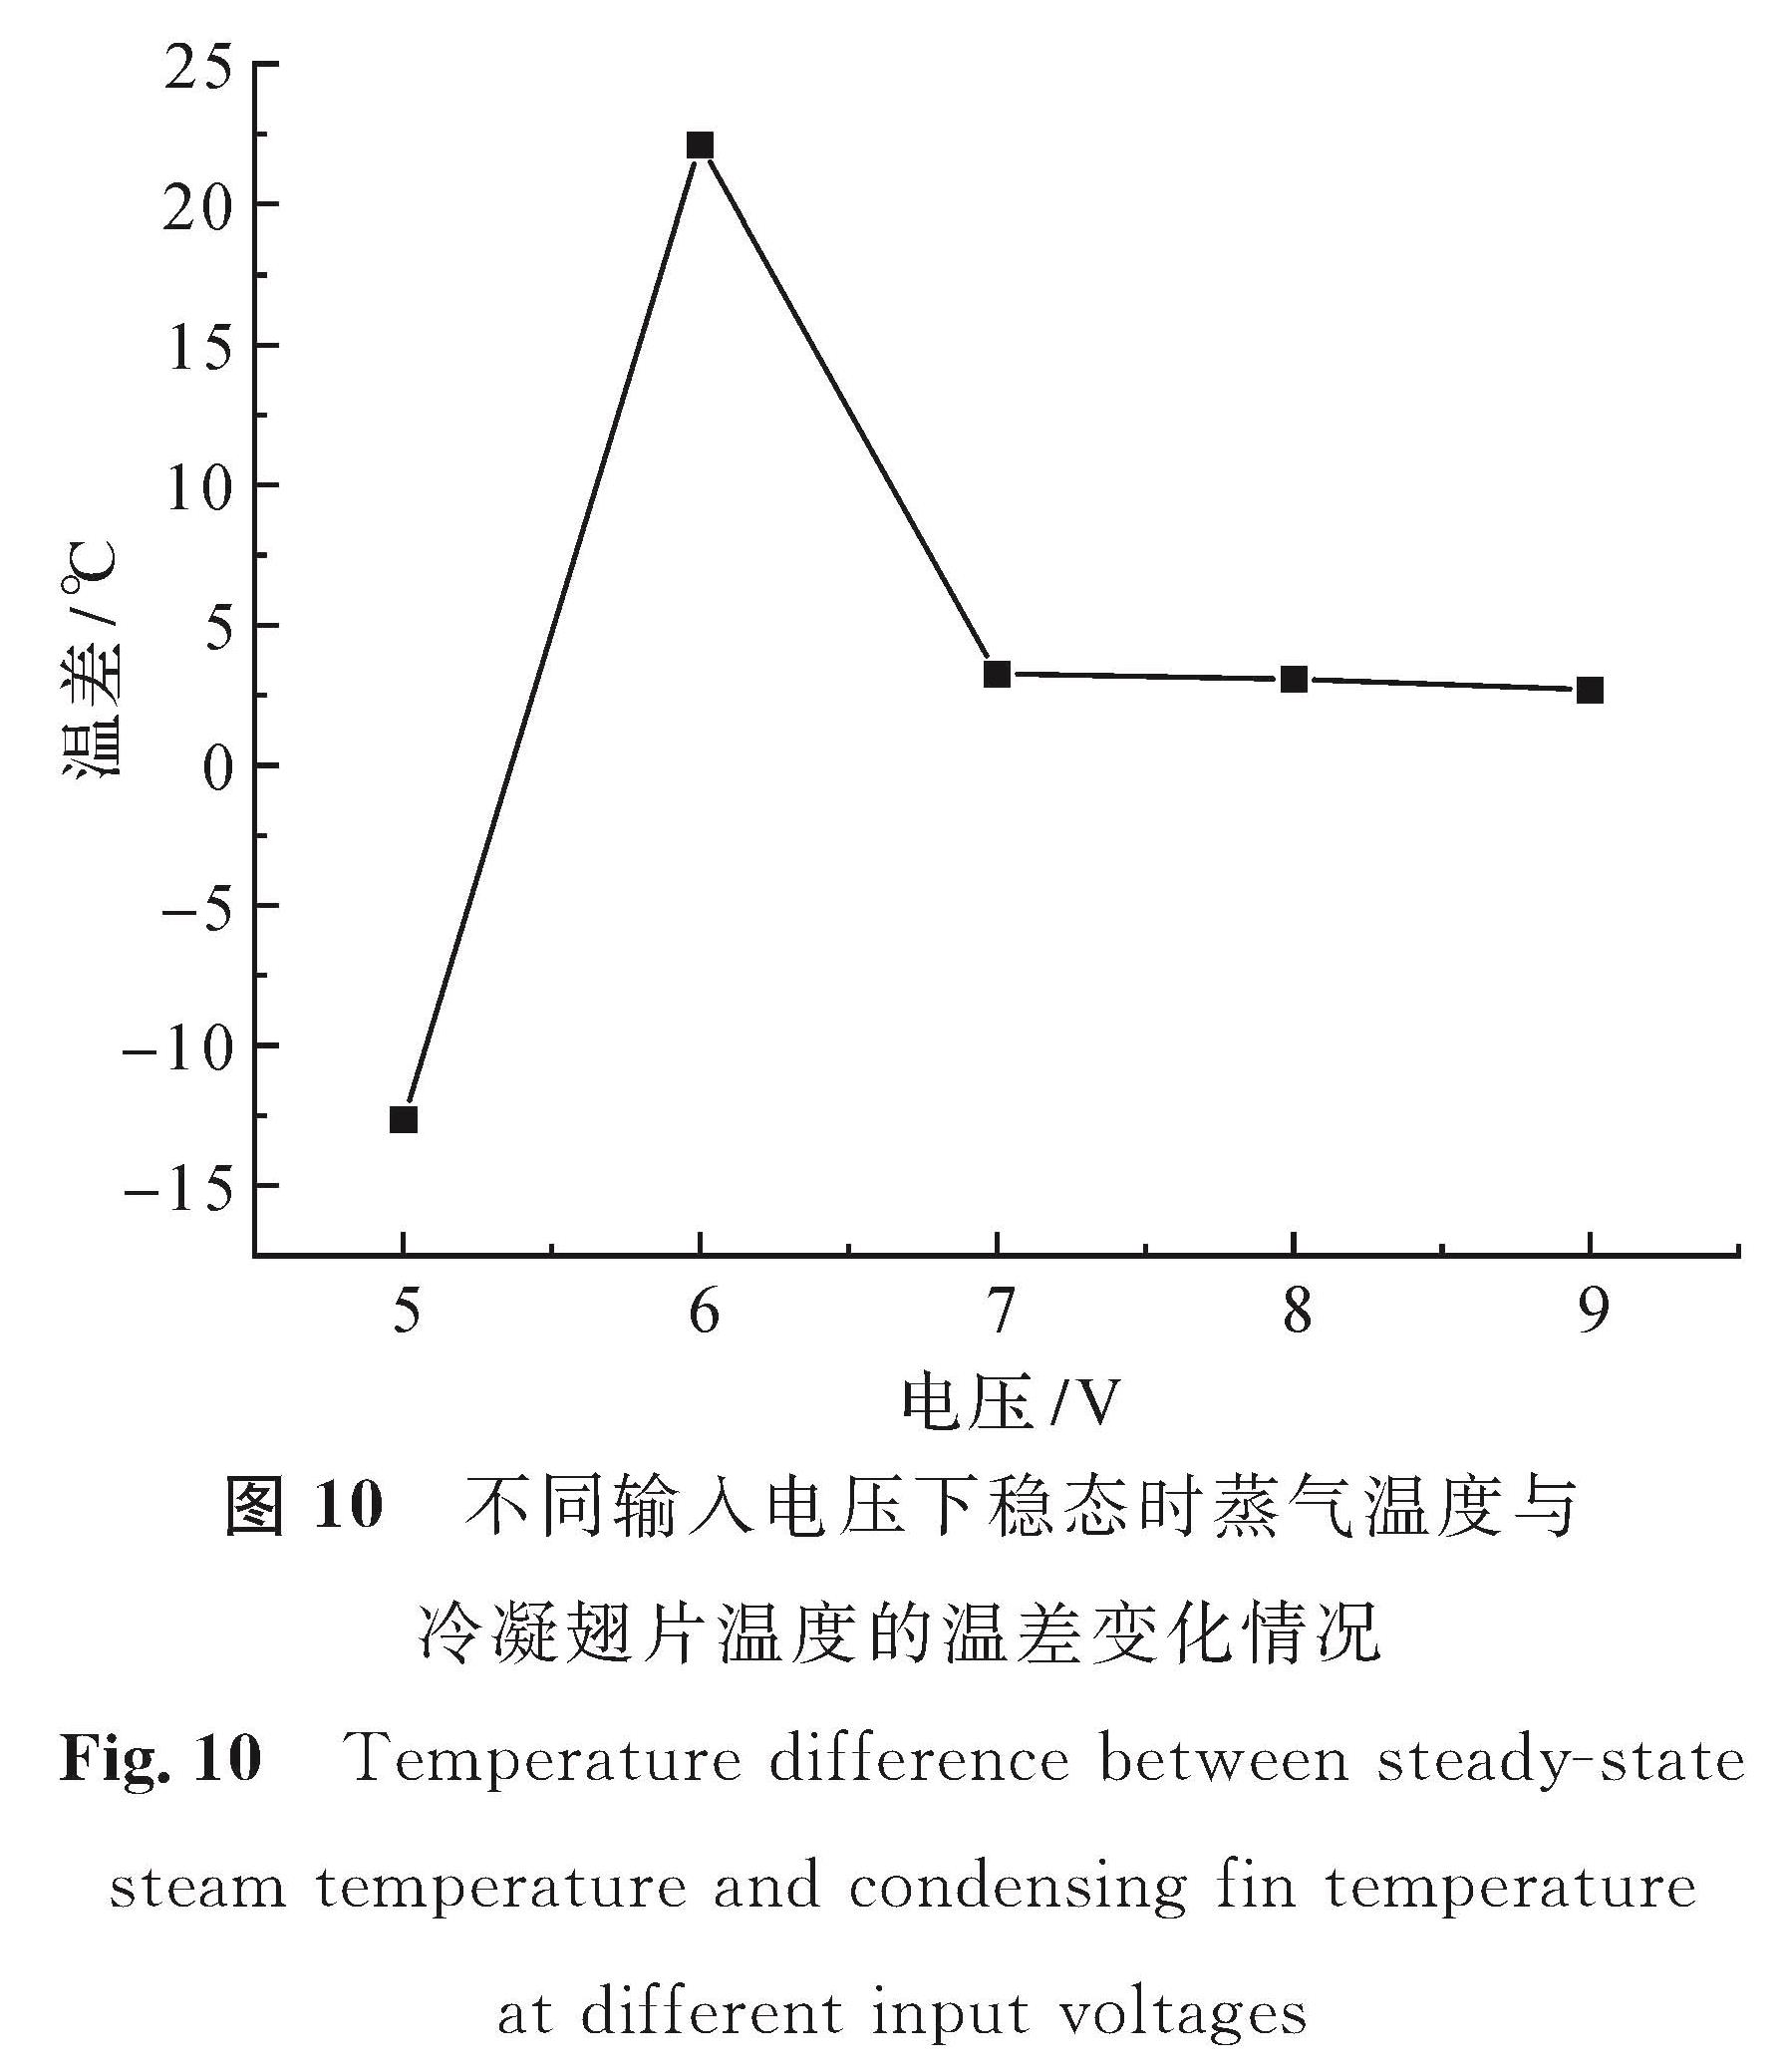 图 10 不同输入电压下稳态时蒸气温度与冷凝翅片温度的温差变化情况<br/>Fig.10 Temperature difference between steady-state steam temperature and condensing fin temperature at different input voltages